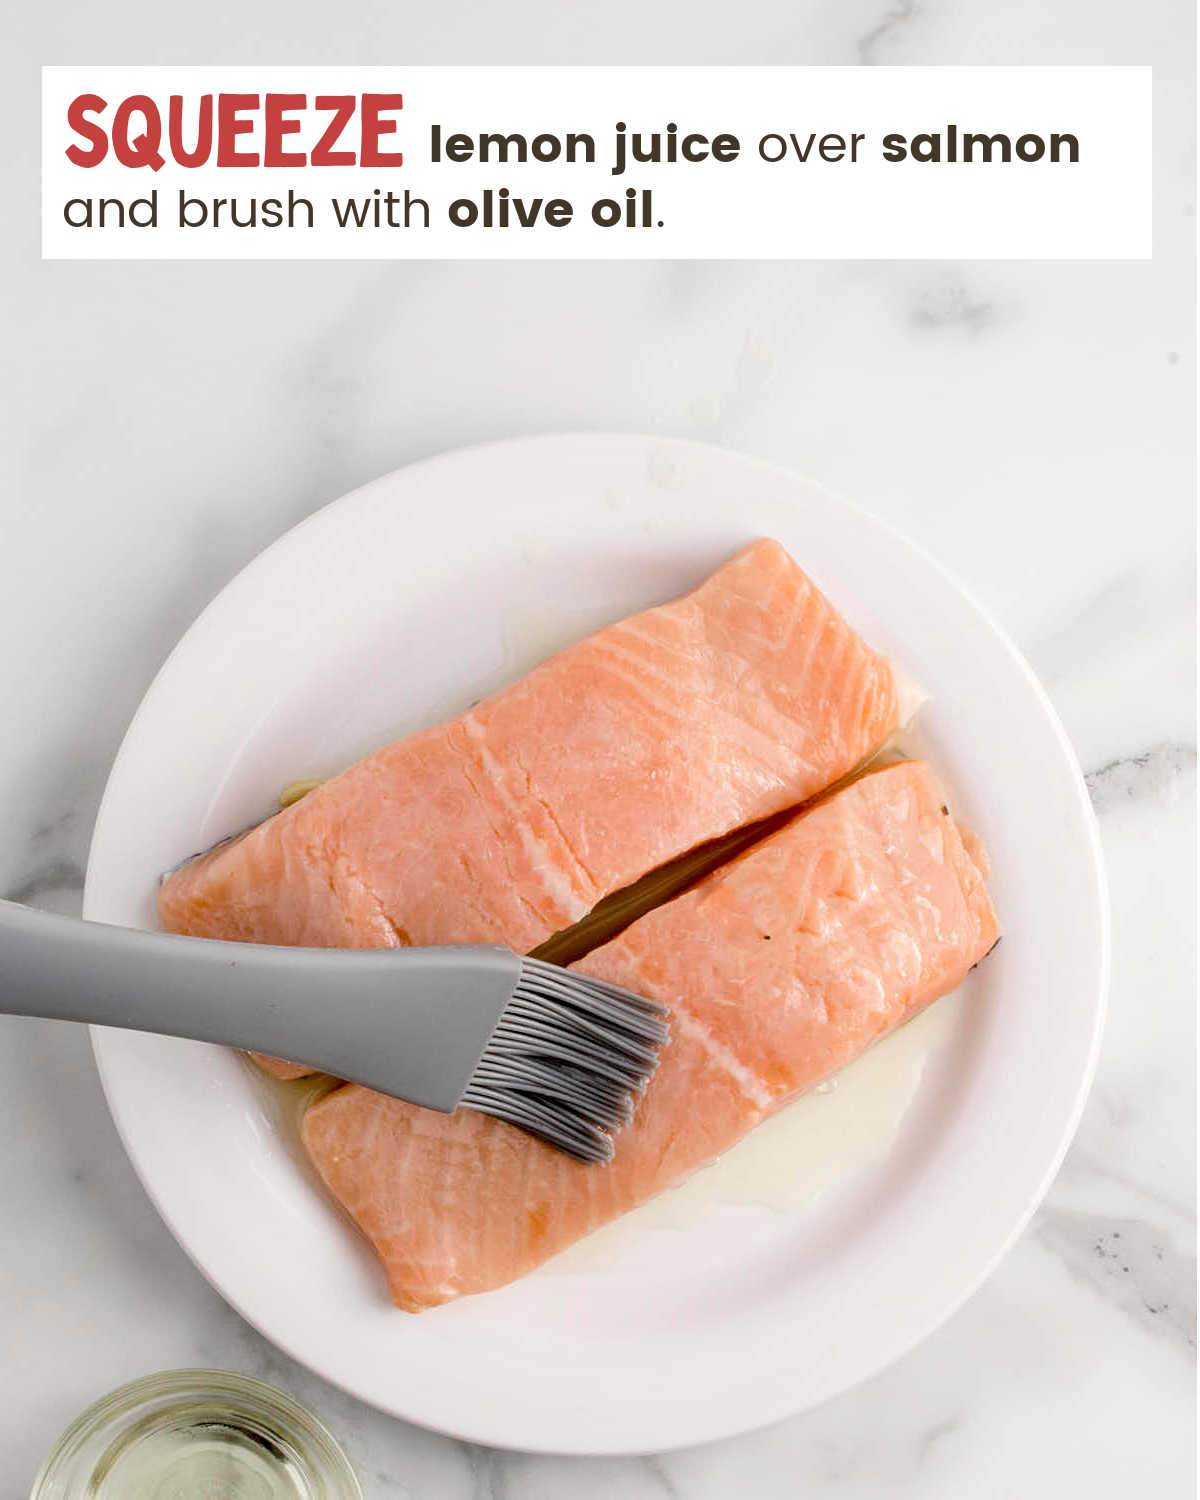 Brushing olive oil over fresh salmon filets.